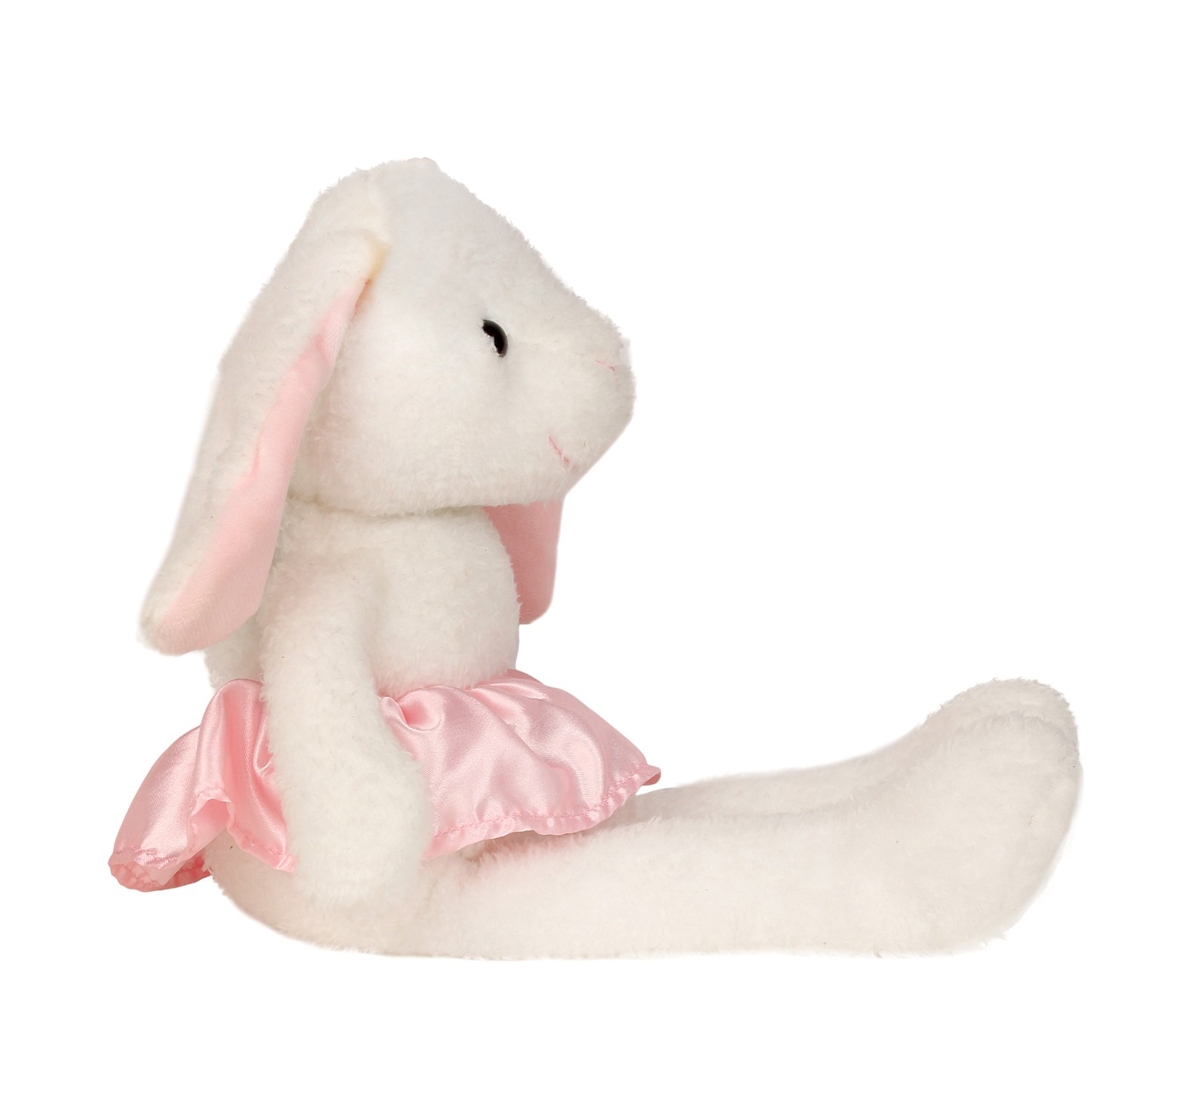 Fuzzbuzz | Fuzzbuzz Rabbit Soft Plush Toy - White - 40Cm Quirky Soft Toys for Kids age 0M+ - 10 Cm (White) 2